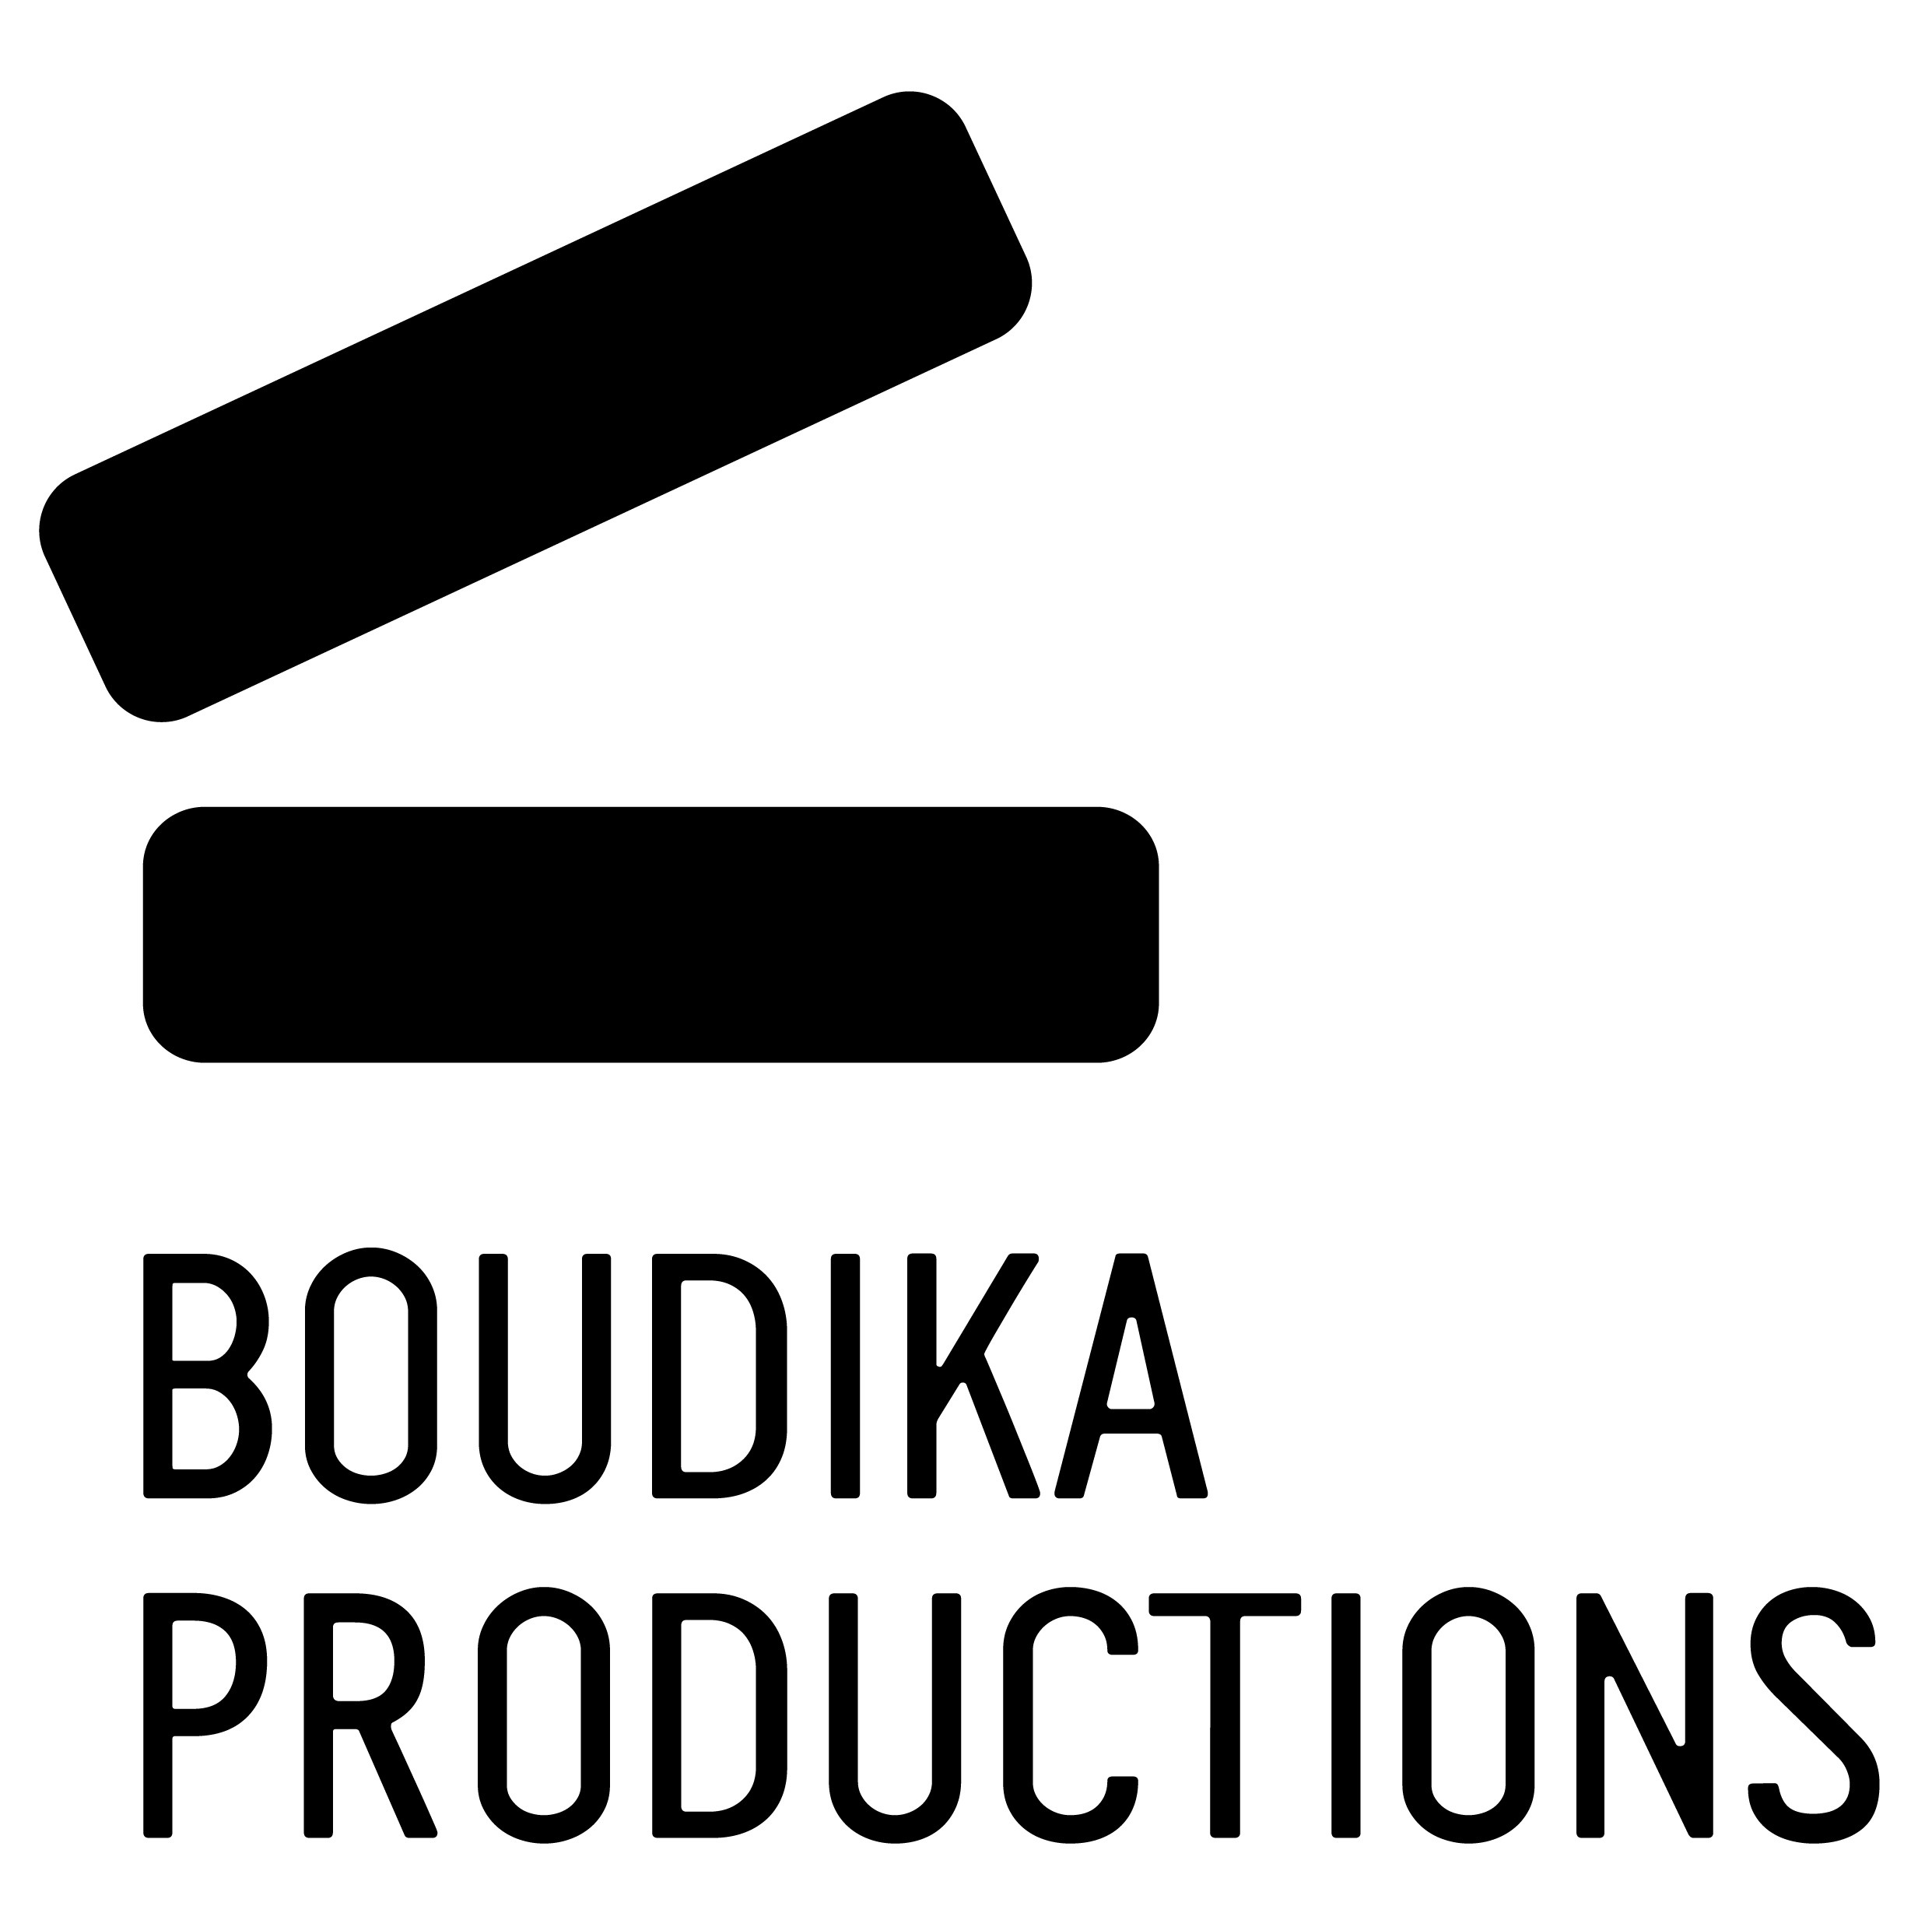 Boudika Productions